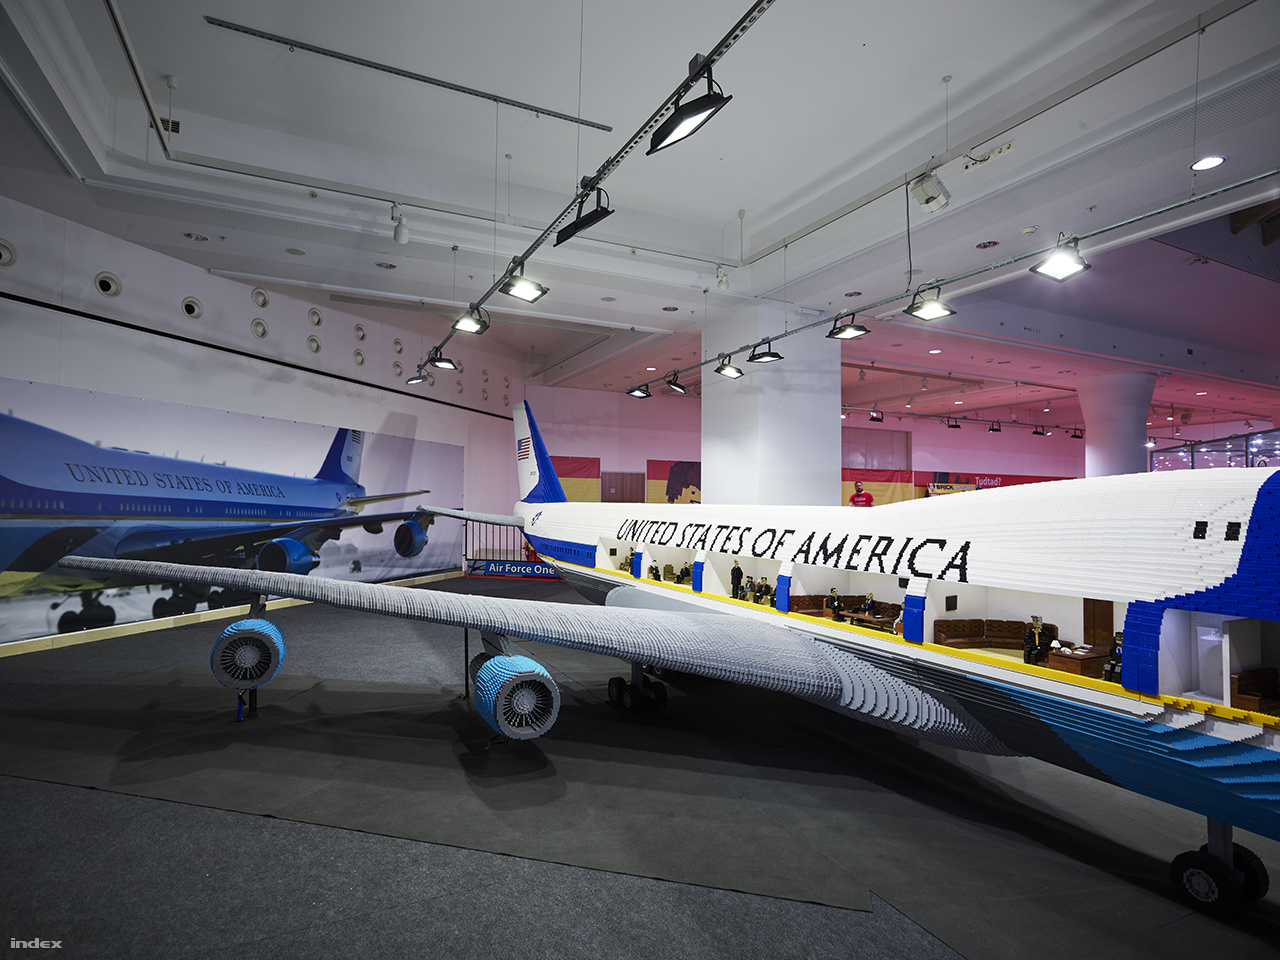 A látogatók betekinthetnek a repülőgép belsejébe is, ahol az USA legfontosabb történelmi személyiségeivel elevenednek meg történelmi jelenetek.